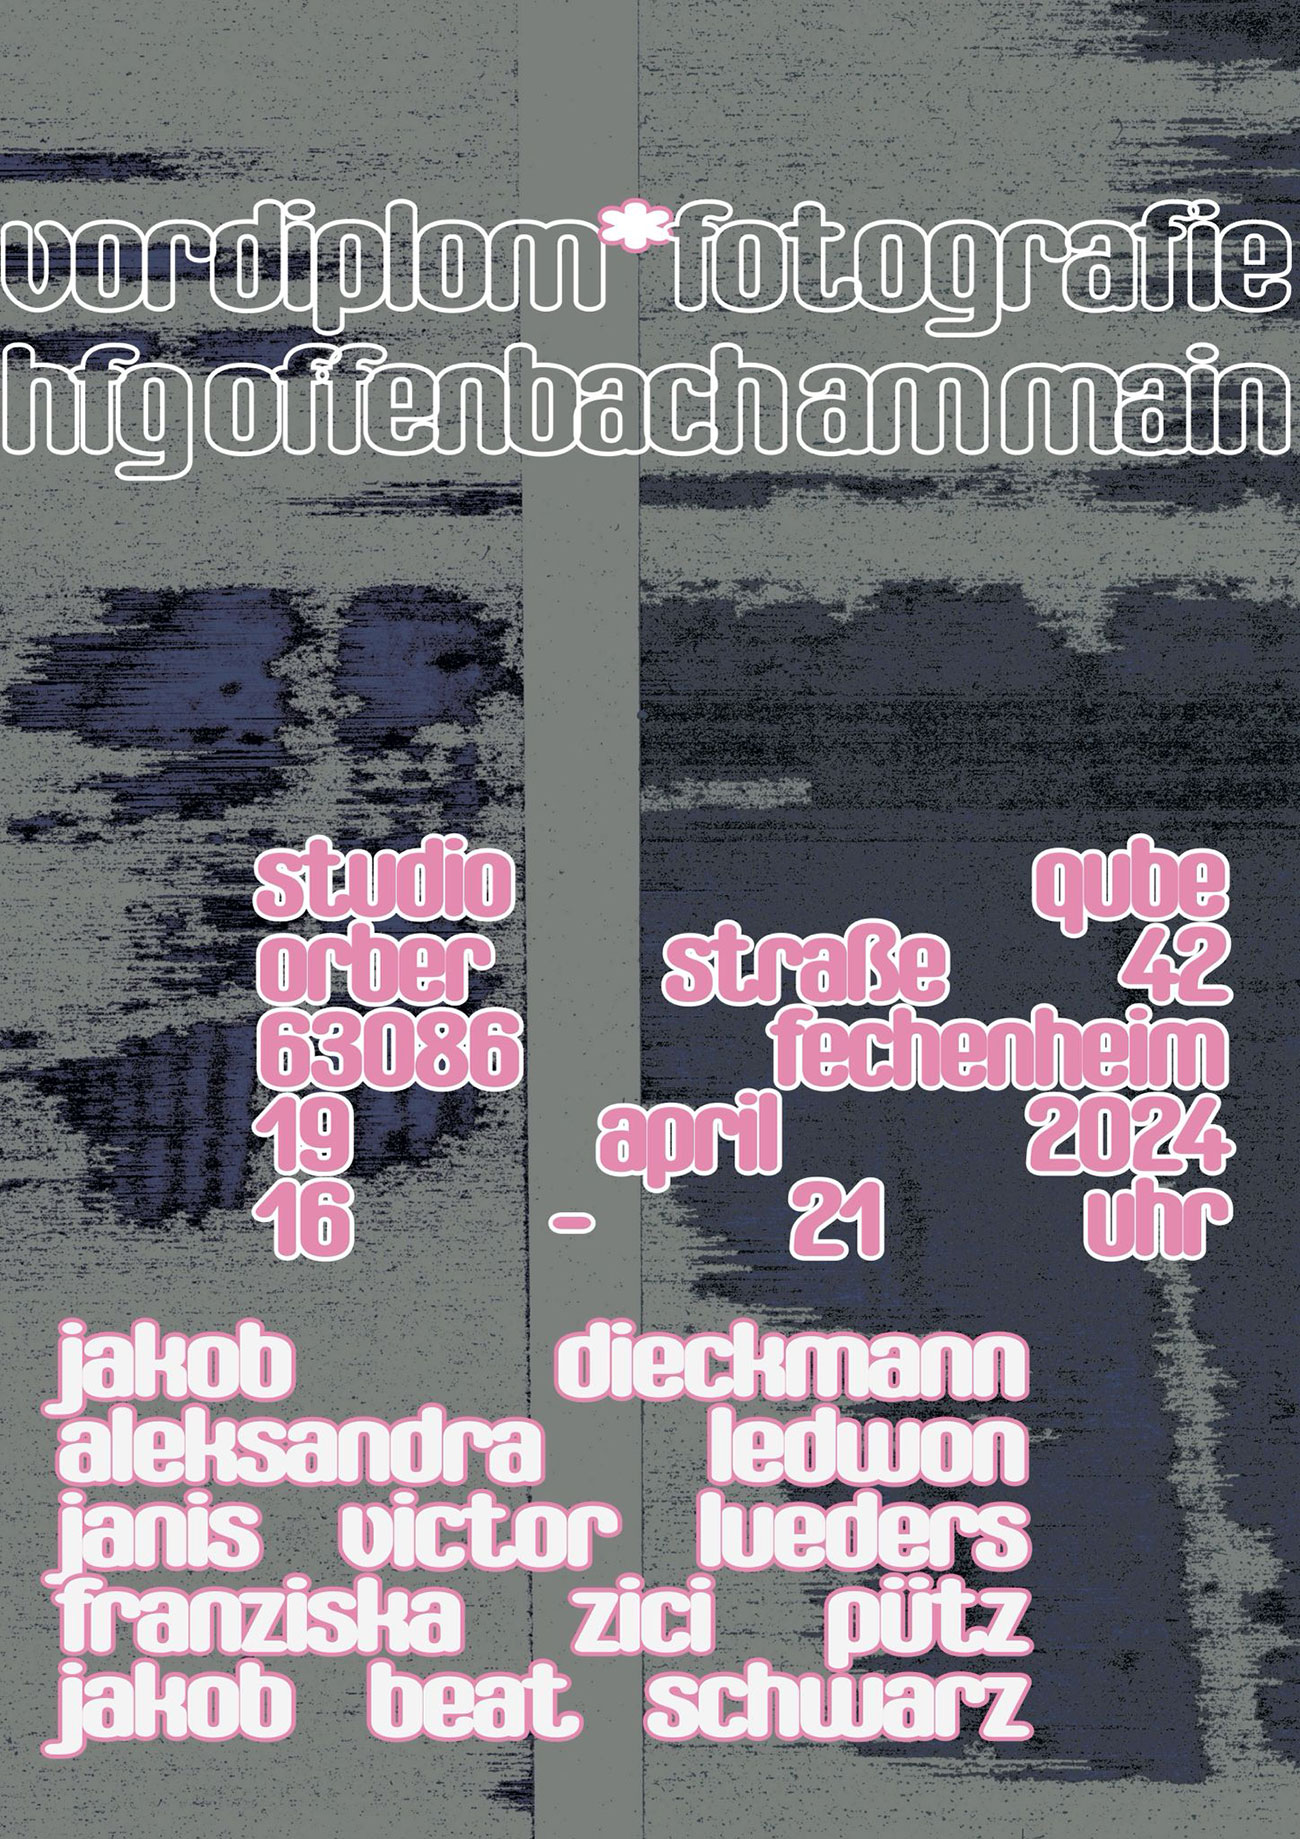 HfG-Offenbach Fotografie Vordiplom Ausstellung am 19. April 2024 um 16:00 bis 21:00 Uhr in Frankfurt am Main